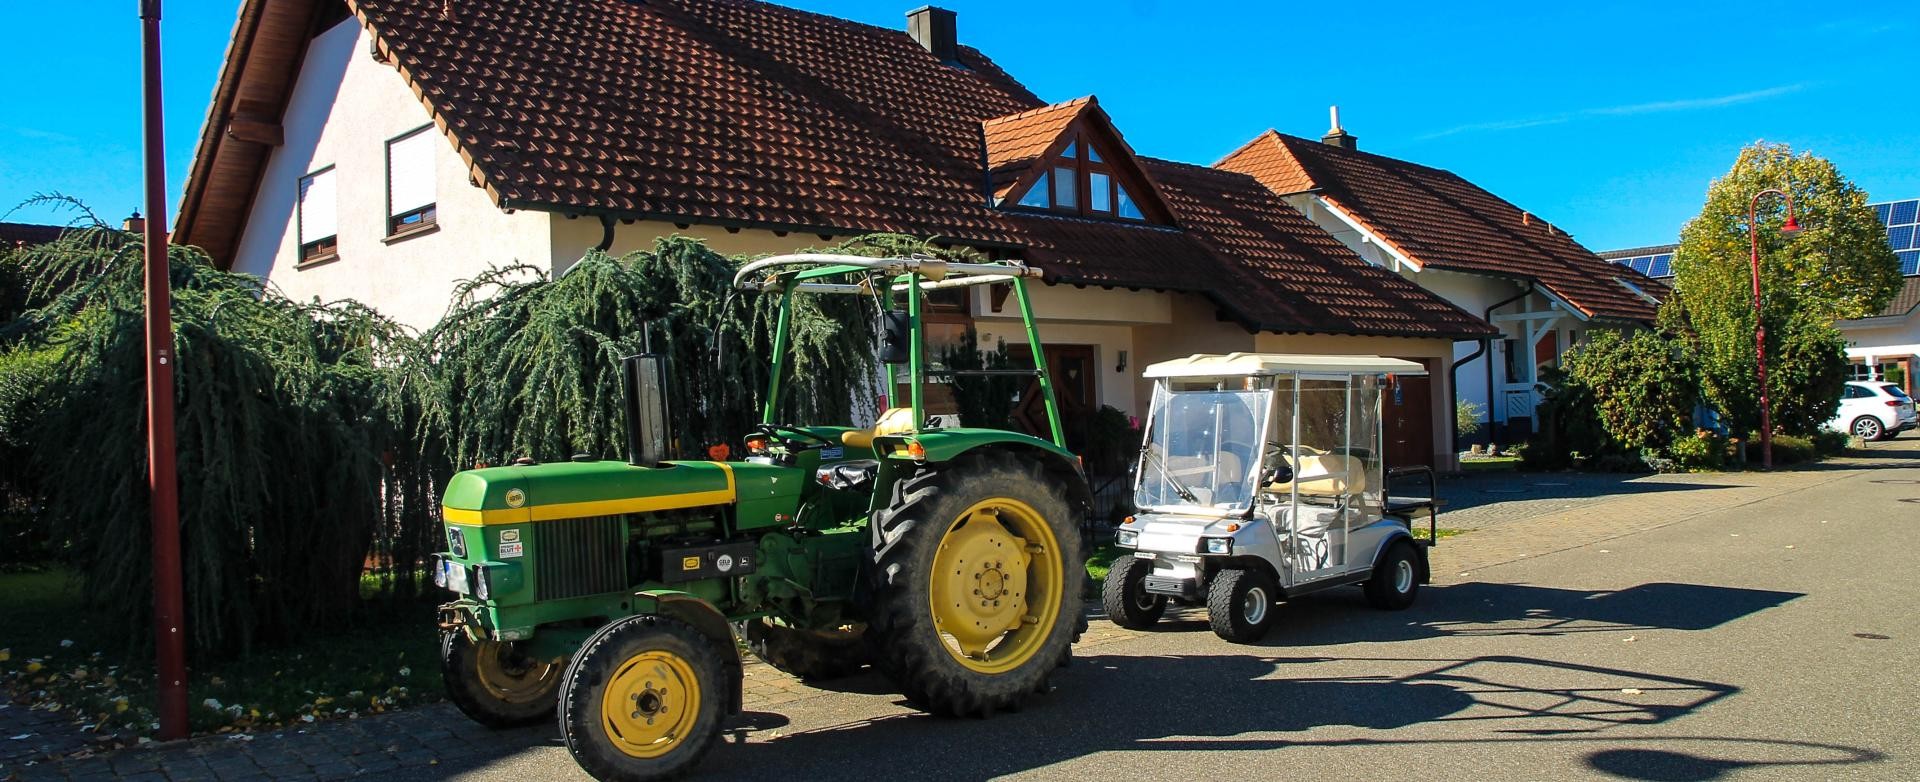 Traktor und Golfcart in einer Ruster Straße